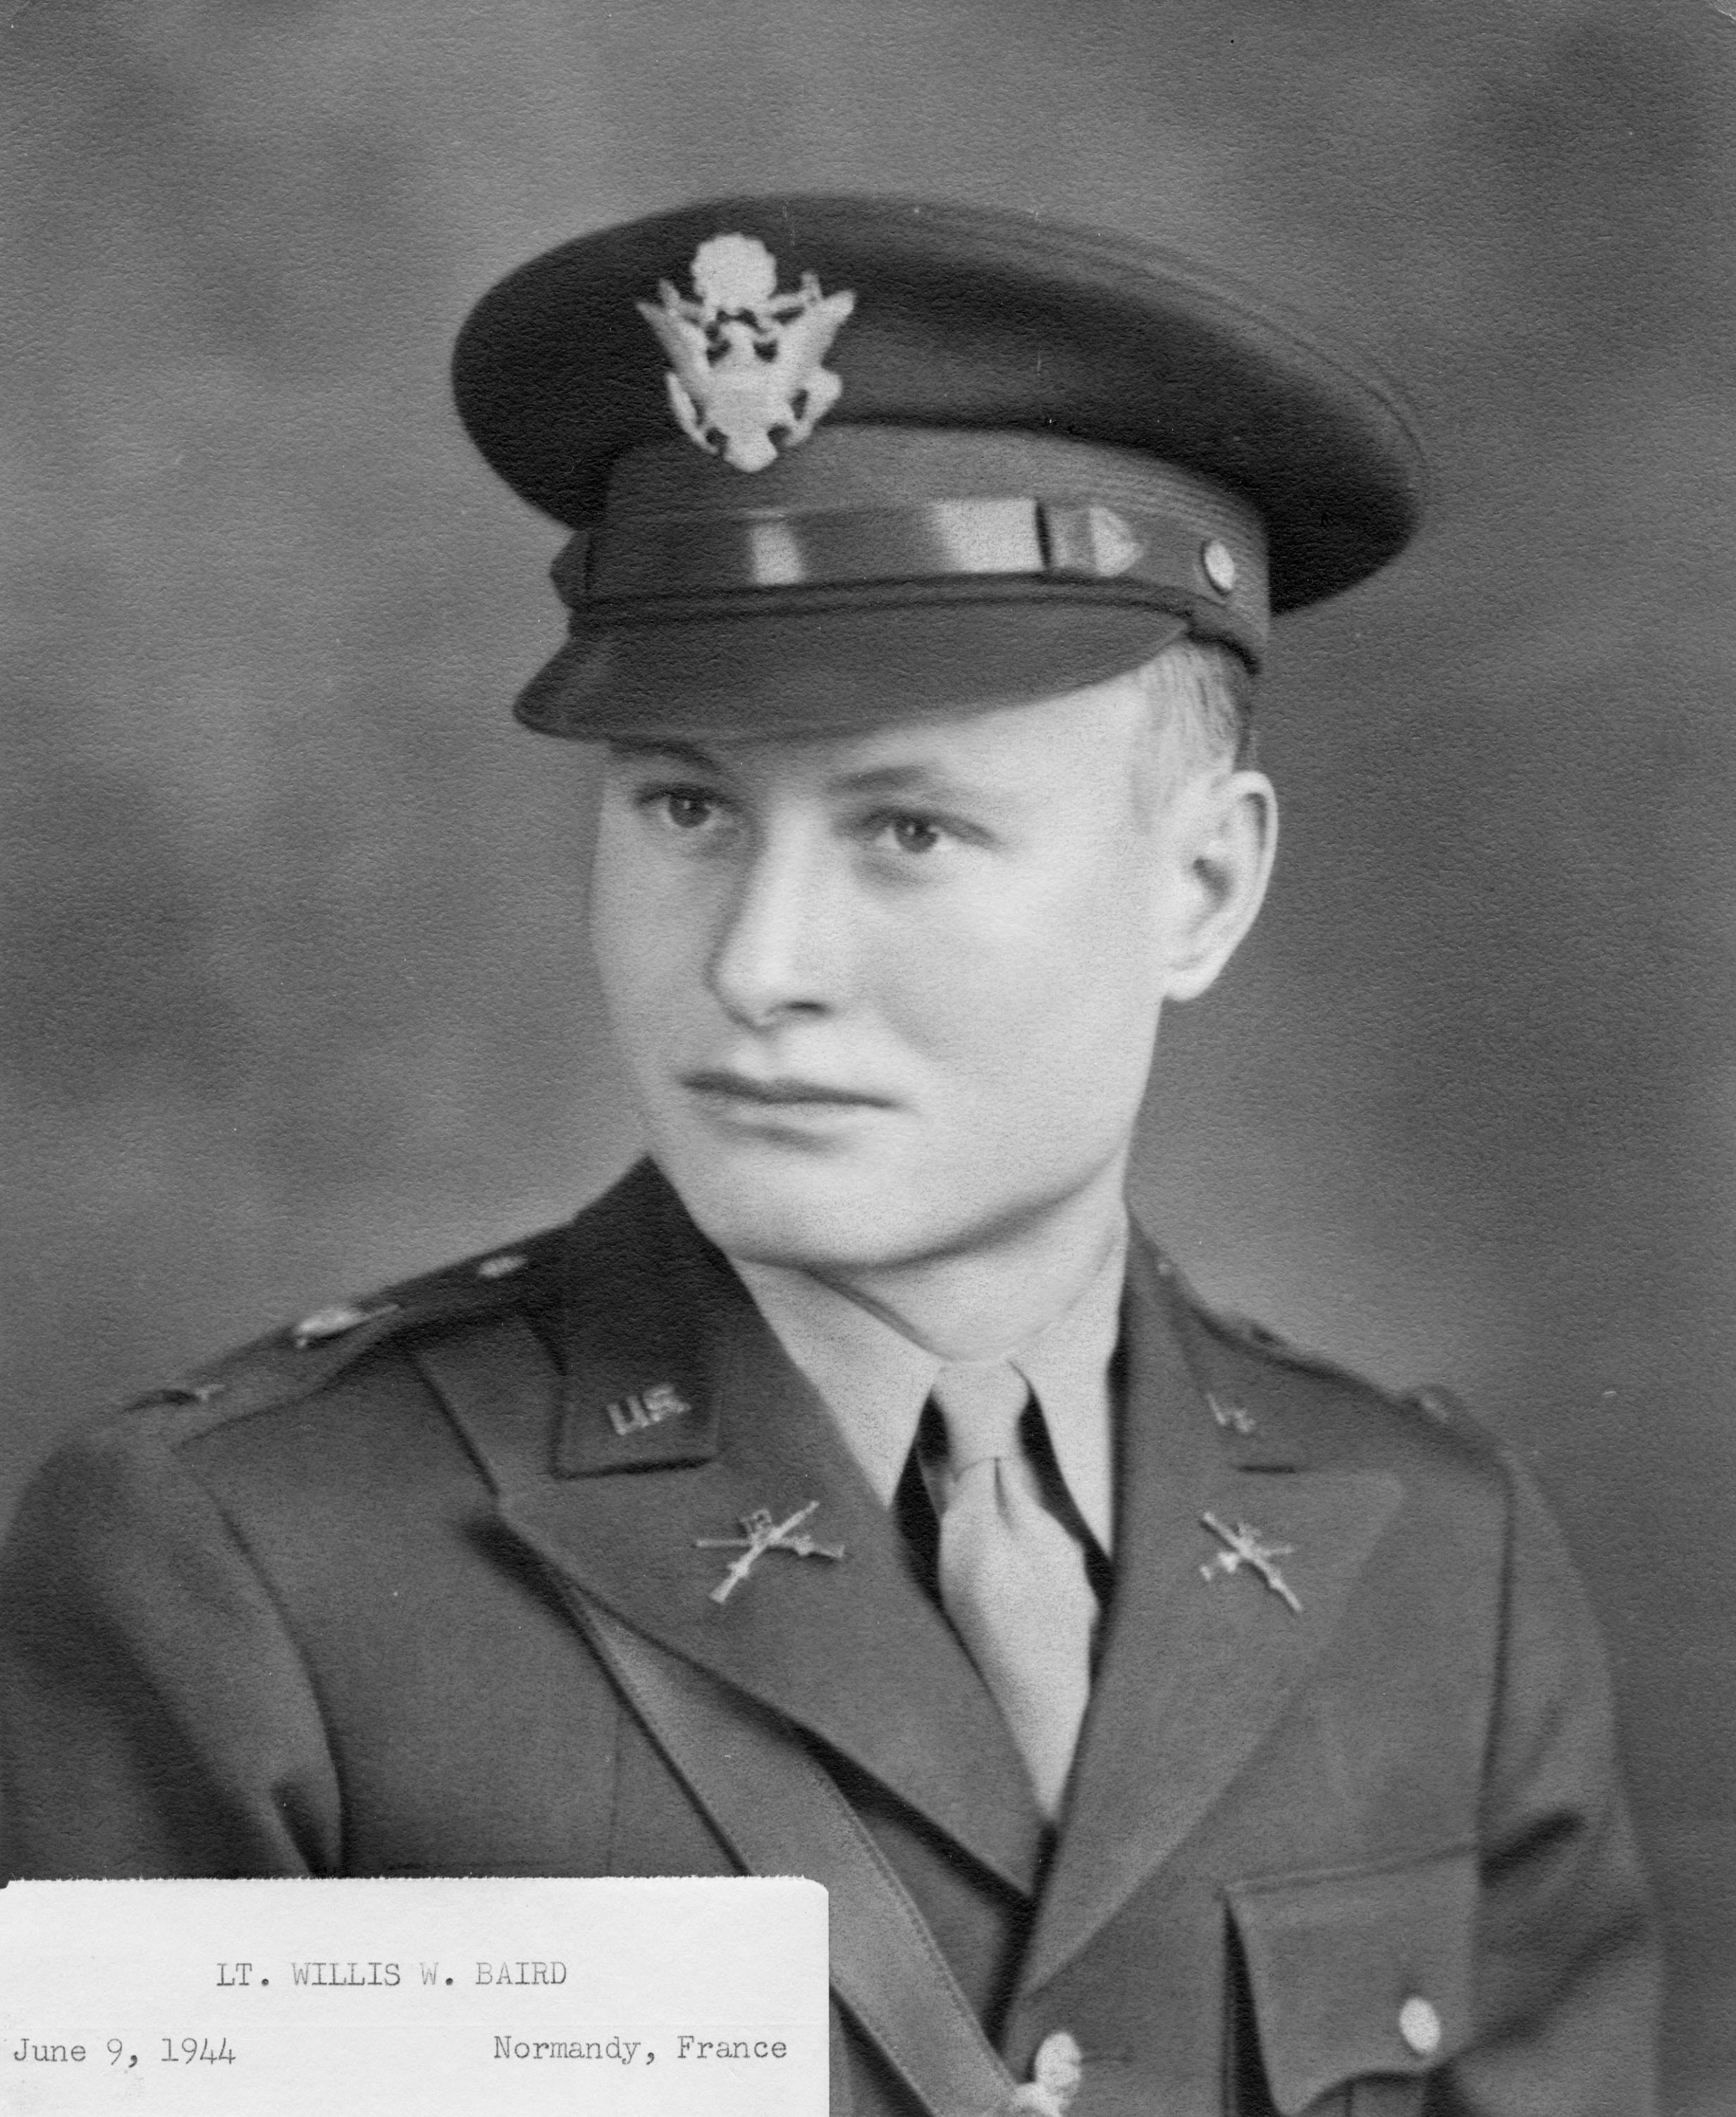 Lt. Willis W. Baird